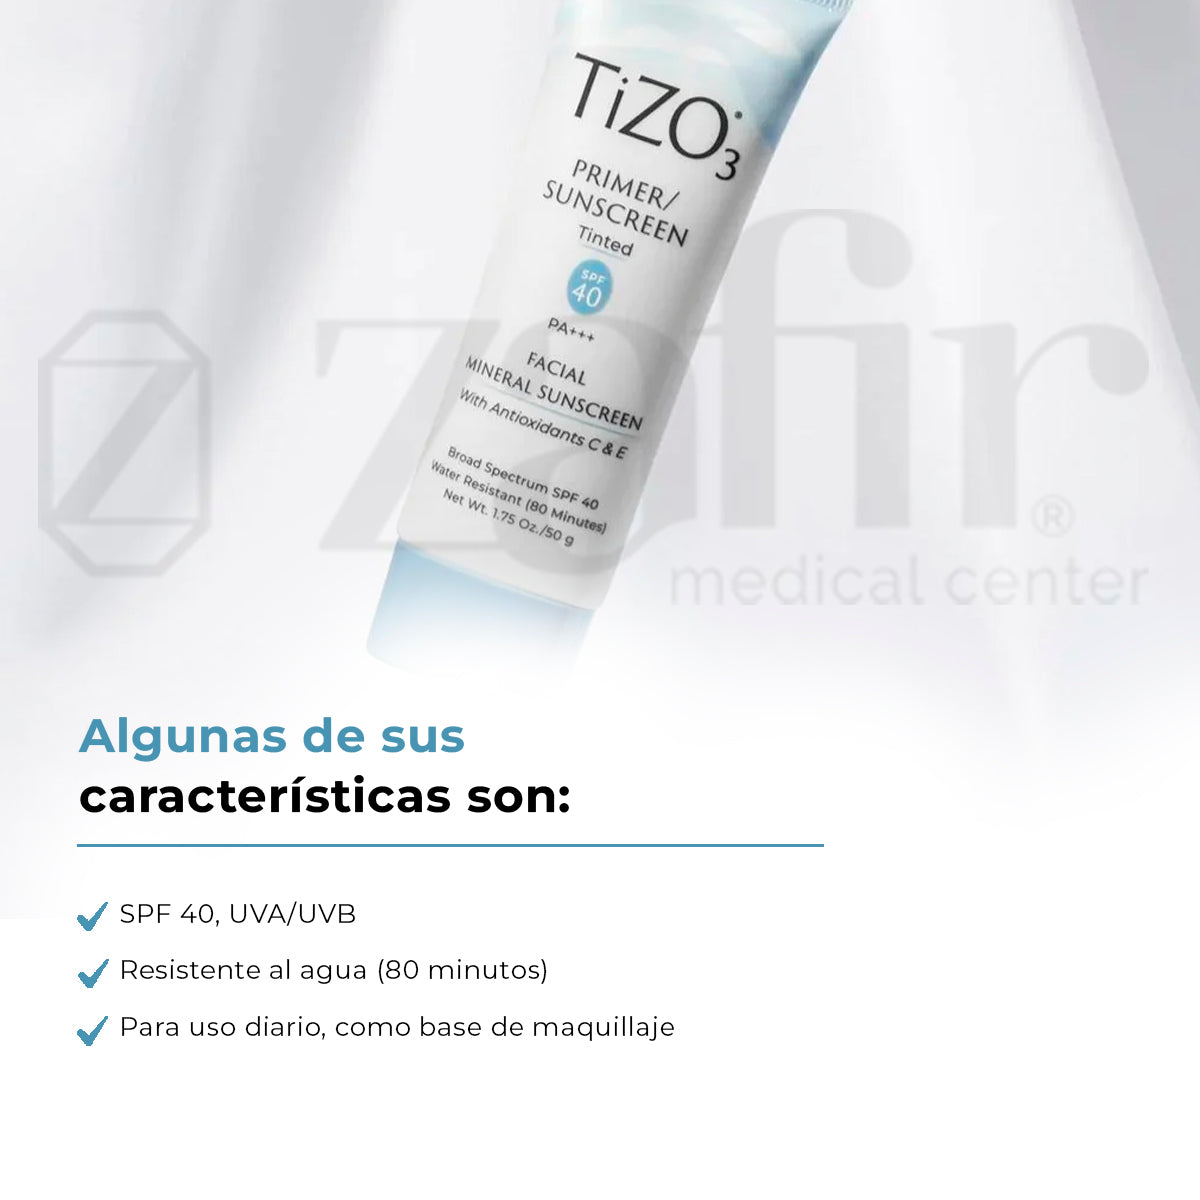 TiZO3 - Primer Sunscreen Tinted 40 SPF